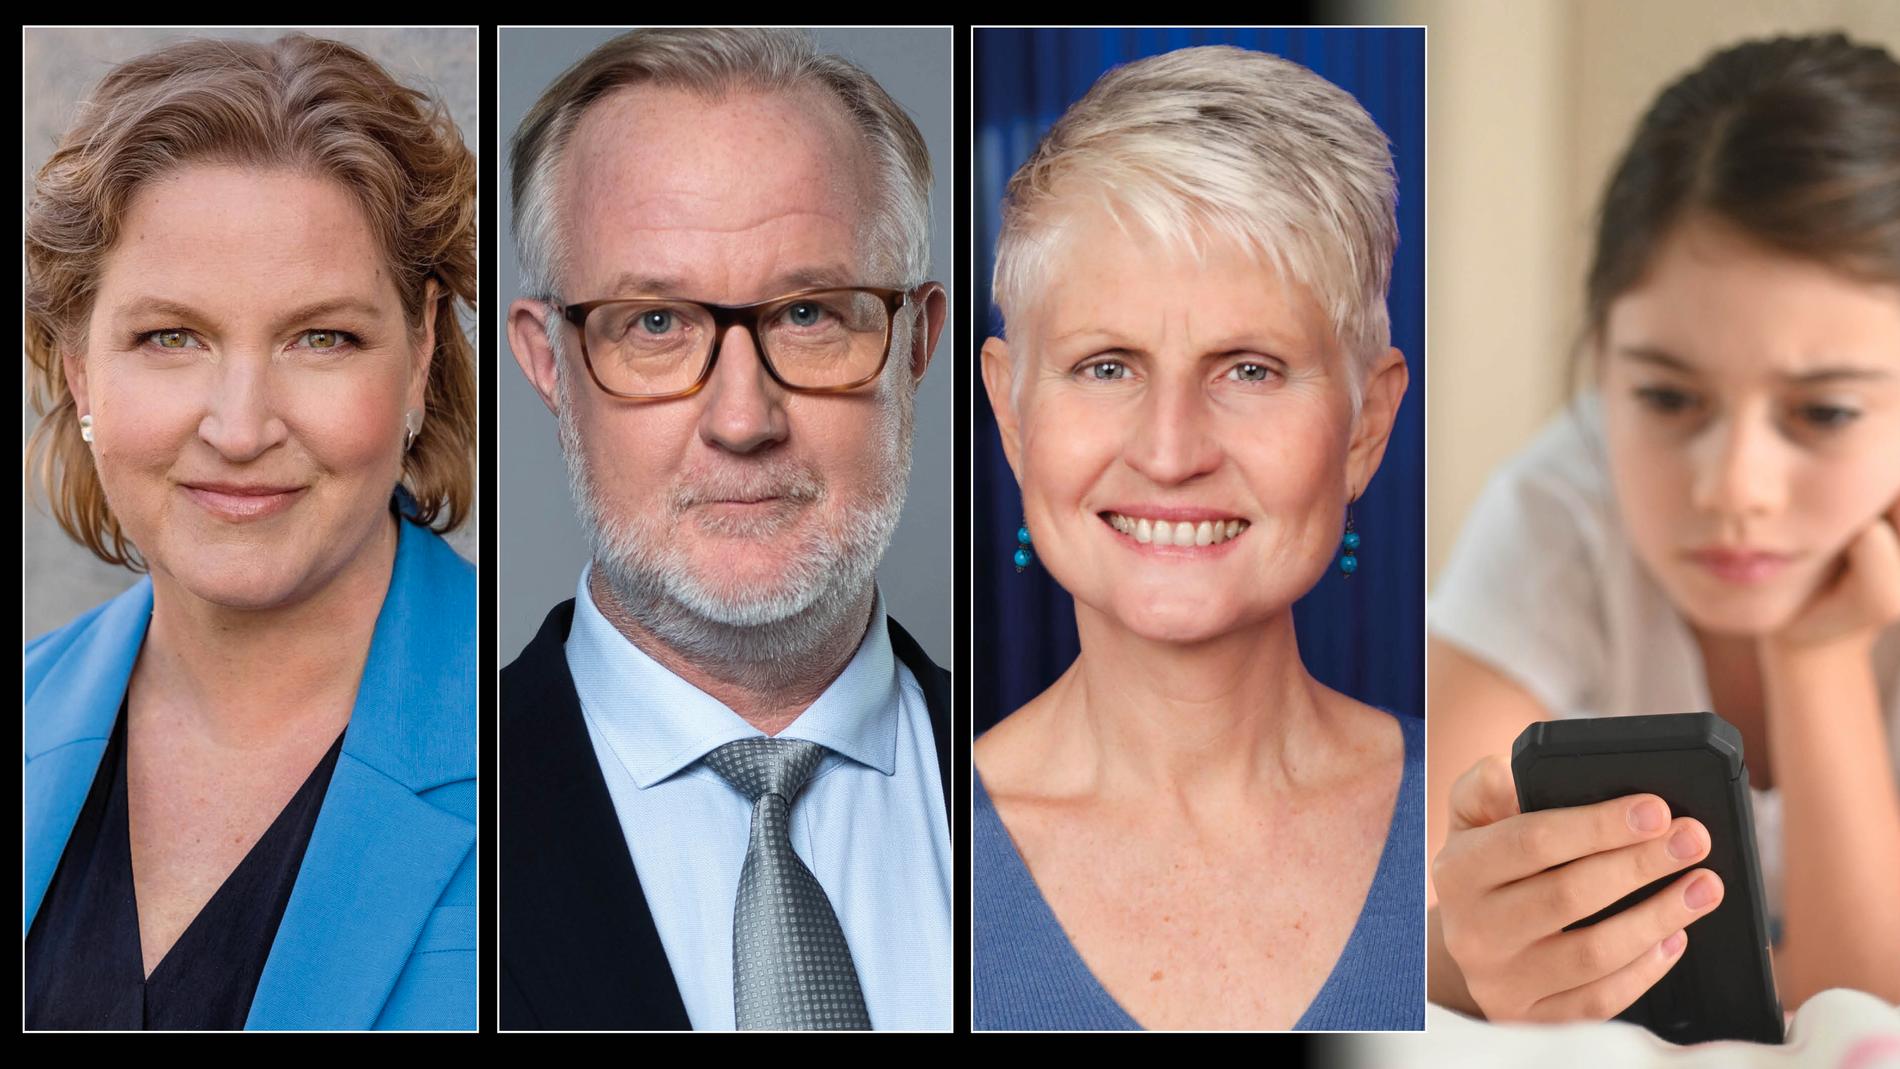 Liberalerna presenterar sitt första vallöfte inför EU-valet i dag: skärmtiden måste regleras på EU-nivå, skriver Johan Pehrson, Karin Karlsbro och Anna Maria Corazza Bildt.